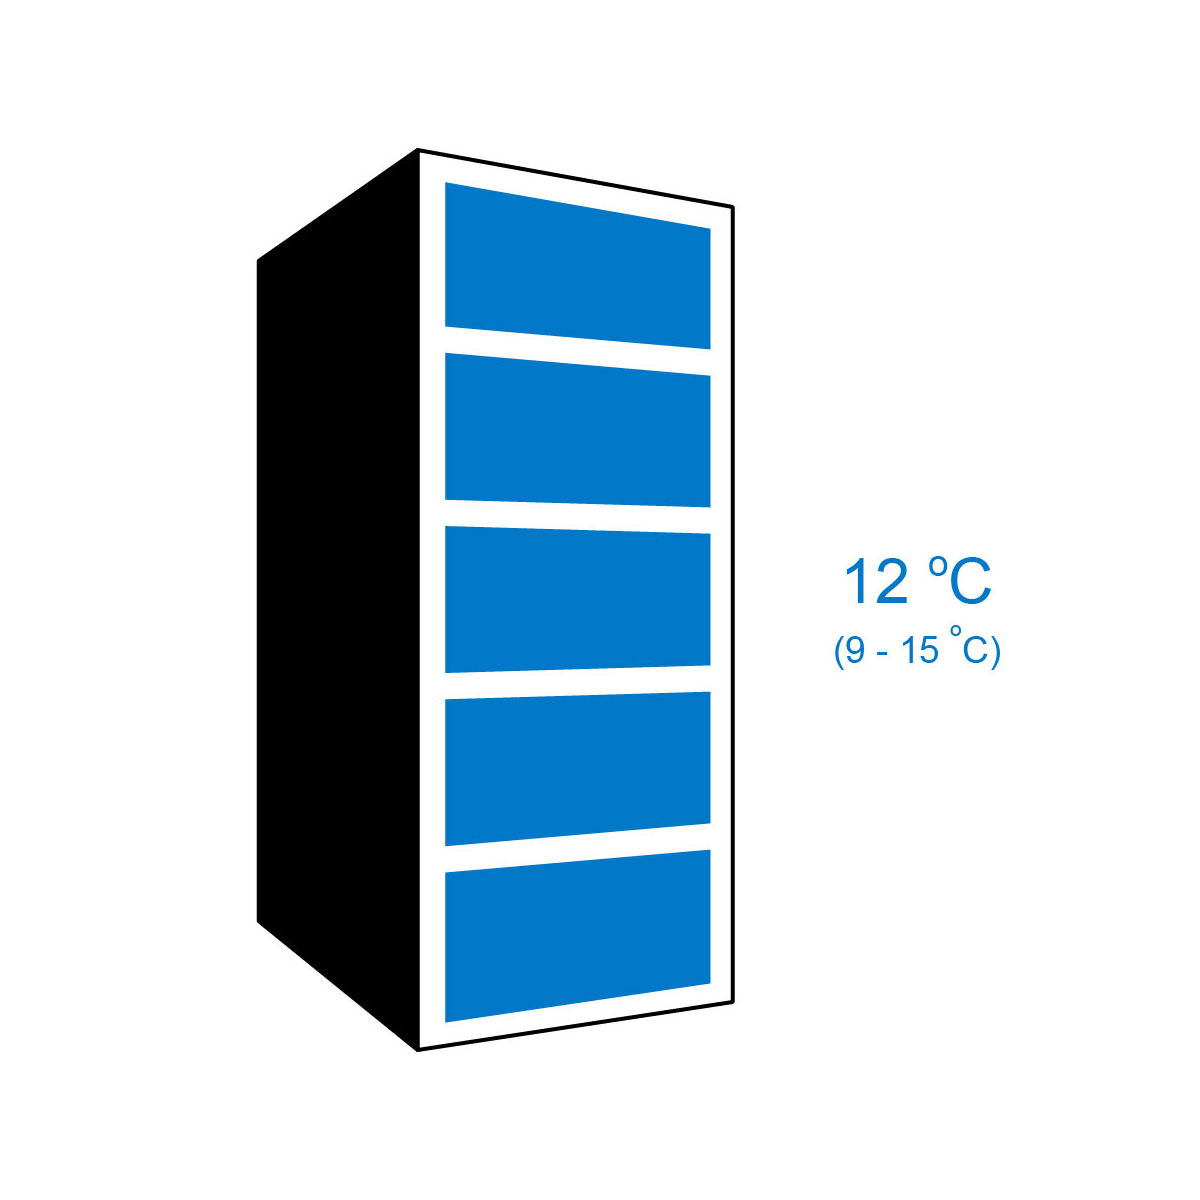 【Eurocave】V-PURE-S Maturing 1 temperature wine cabinet Pure, Small model